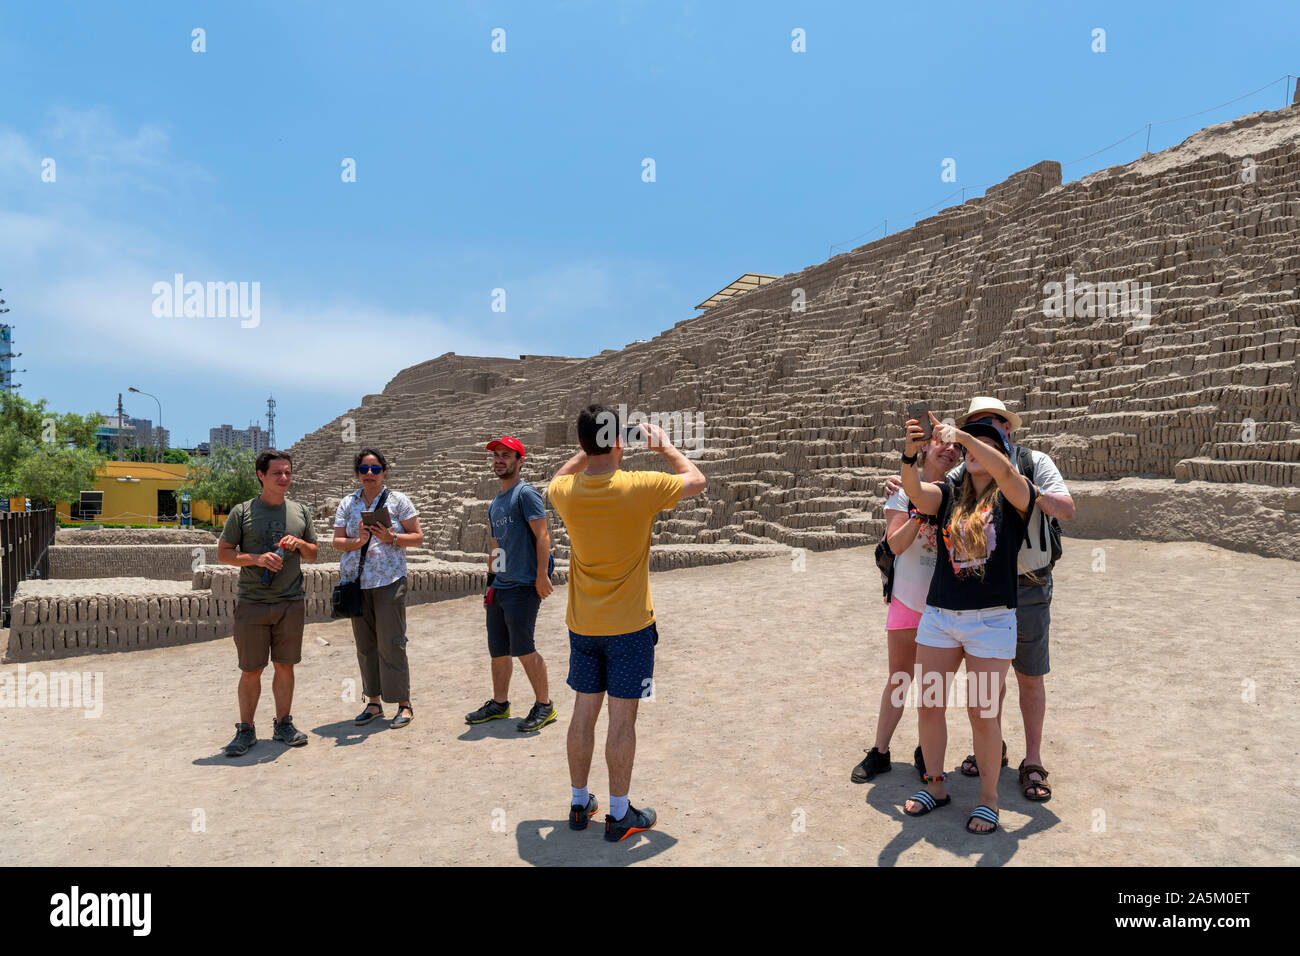 Les visiteurs qui prennent des photos des ruines de Huaca Pucllana, une pyramide d'adobe datant d'environ 400 AD, Miraflores, Lima, Pérou, Amérique du Sud Banque D'Images